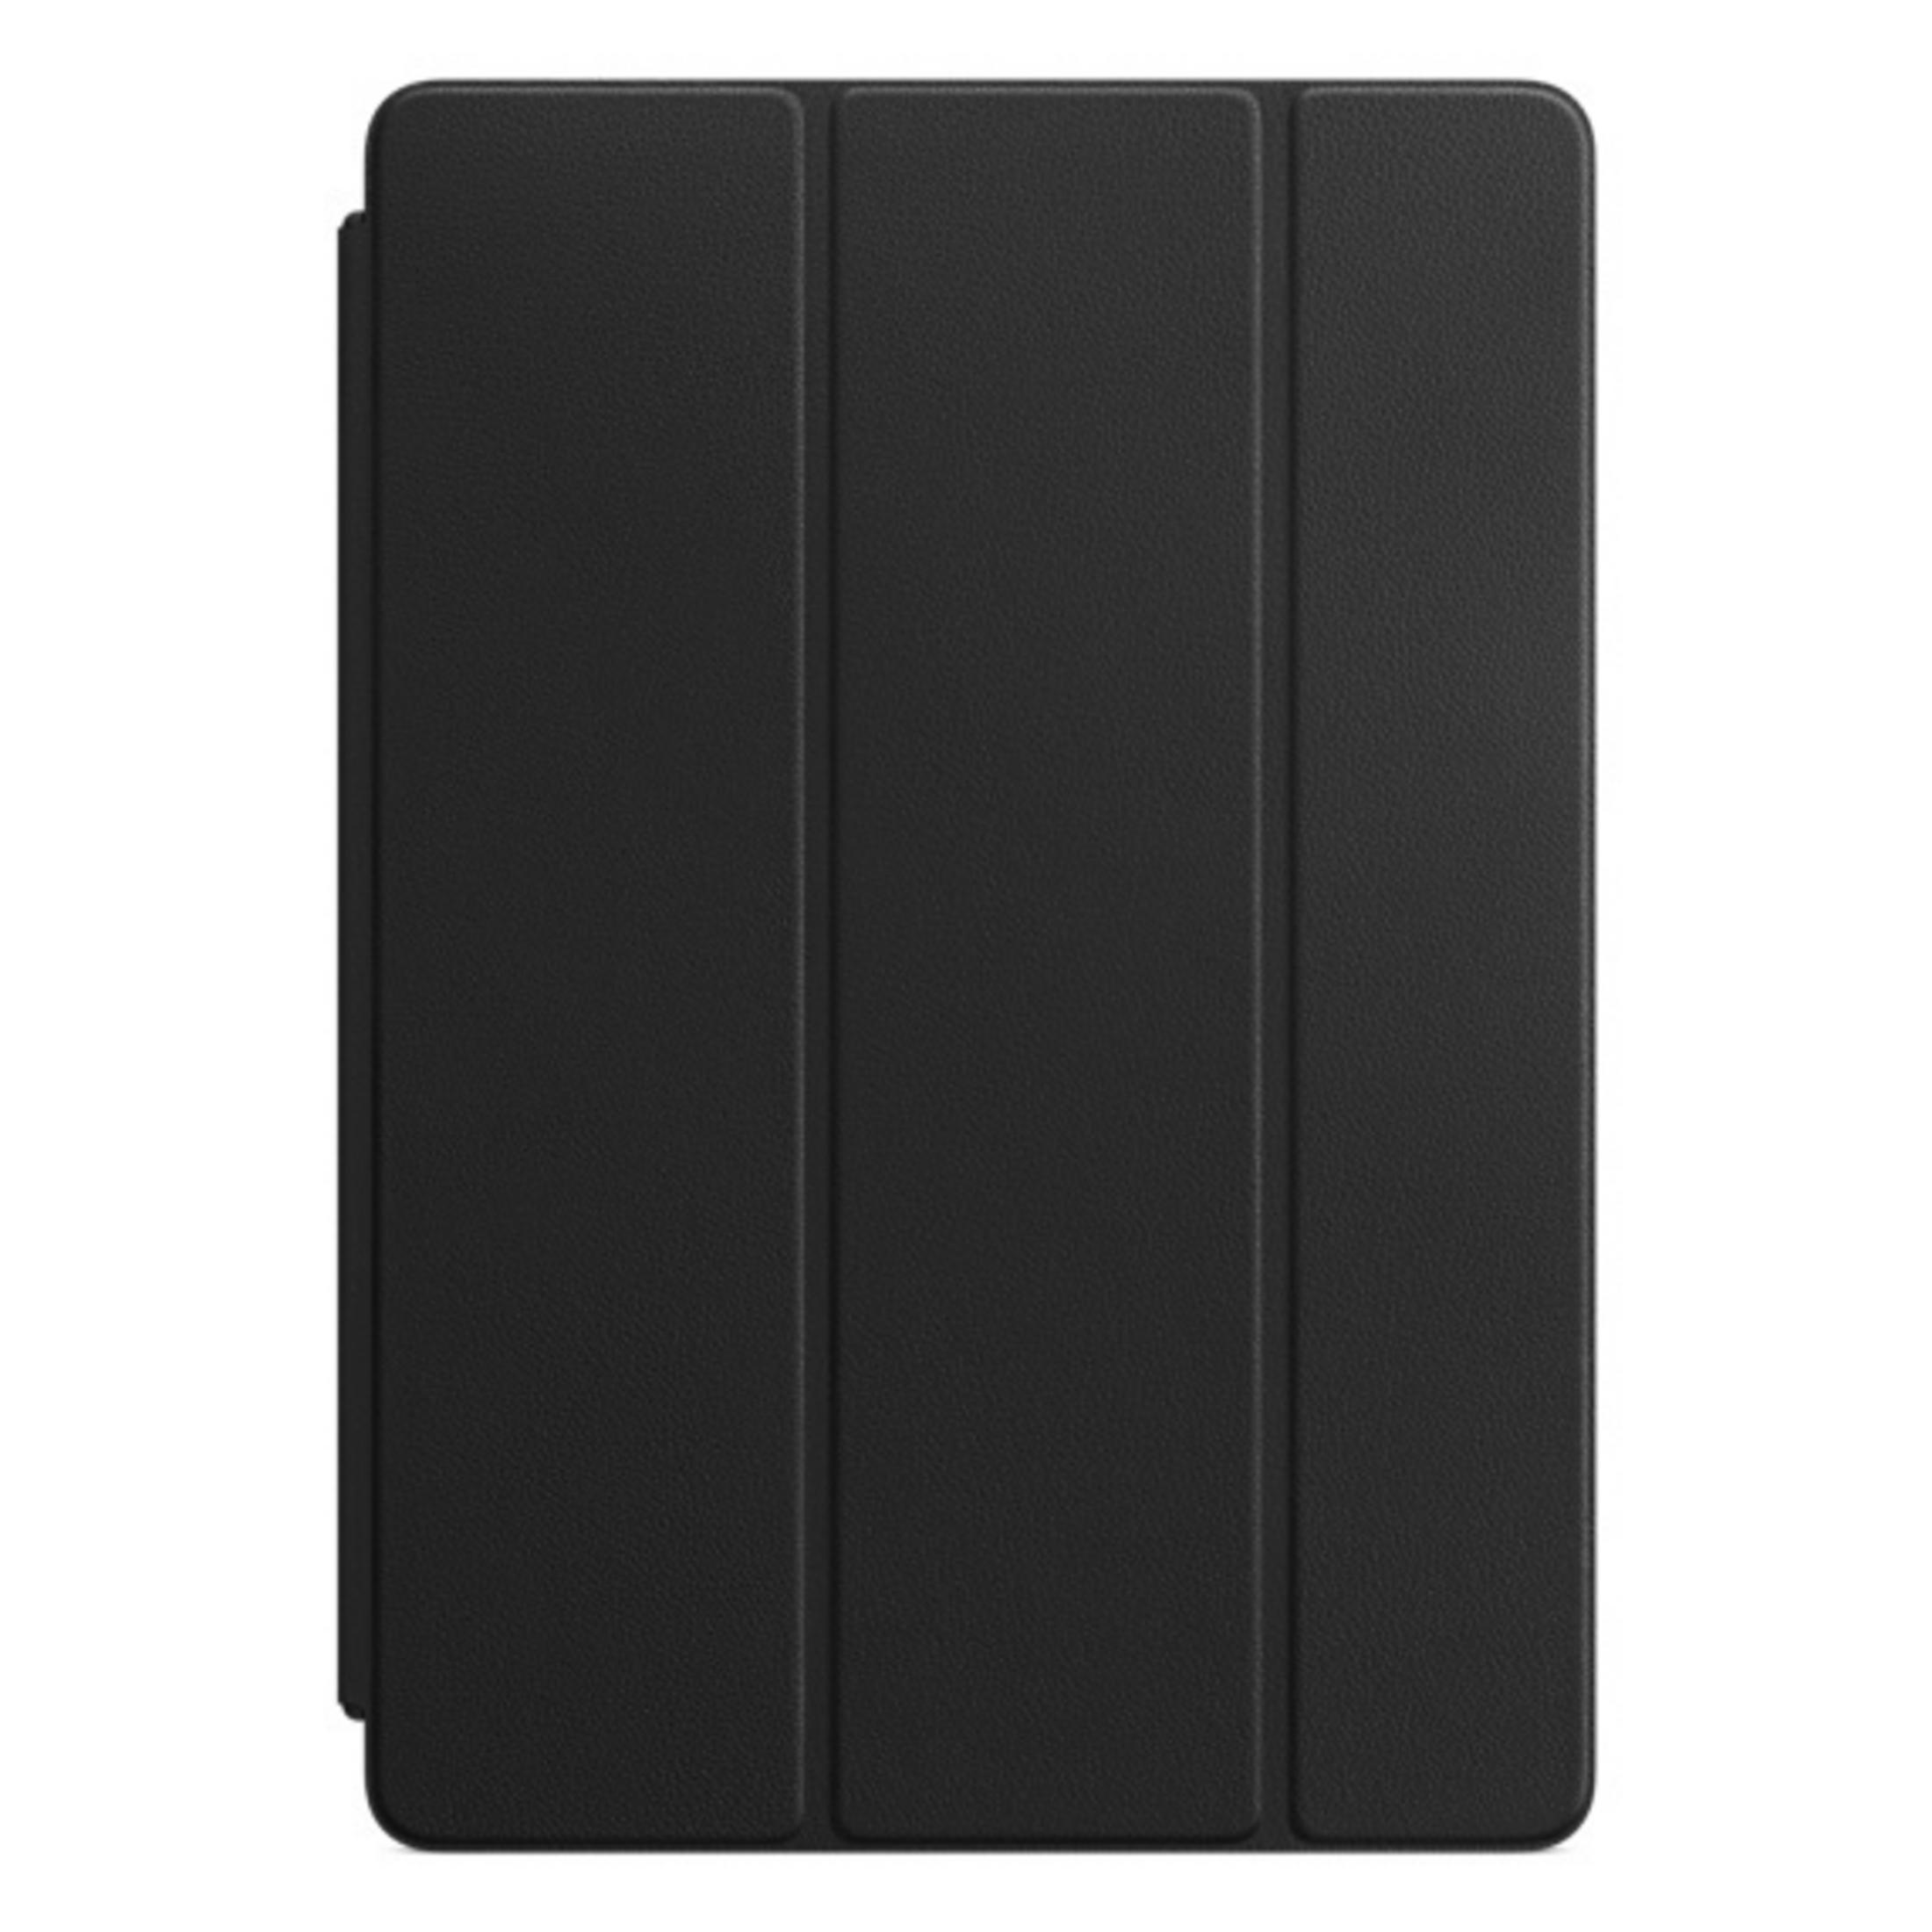 AIR 10.5 COVER MPUD2ZM/A SMART für Anthrazit Reisekoffer IPAD BLACK Tablethülle Apple LEATHER Echtleder, APPLE